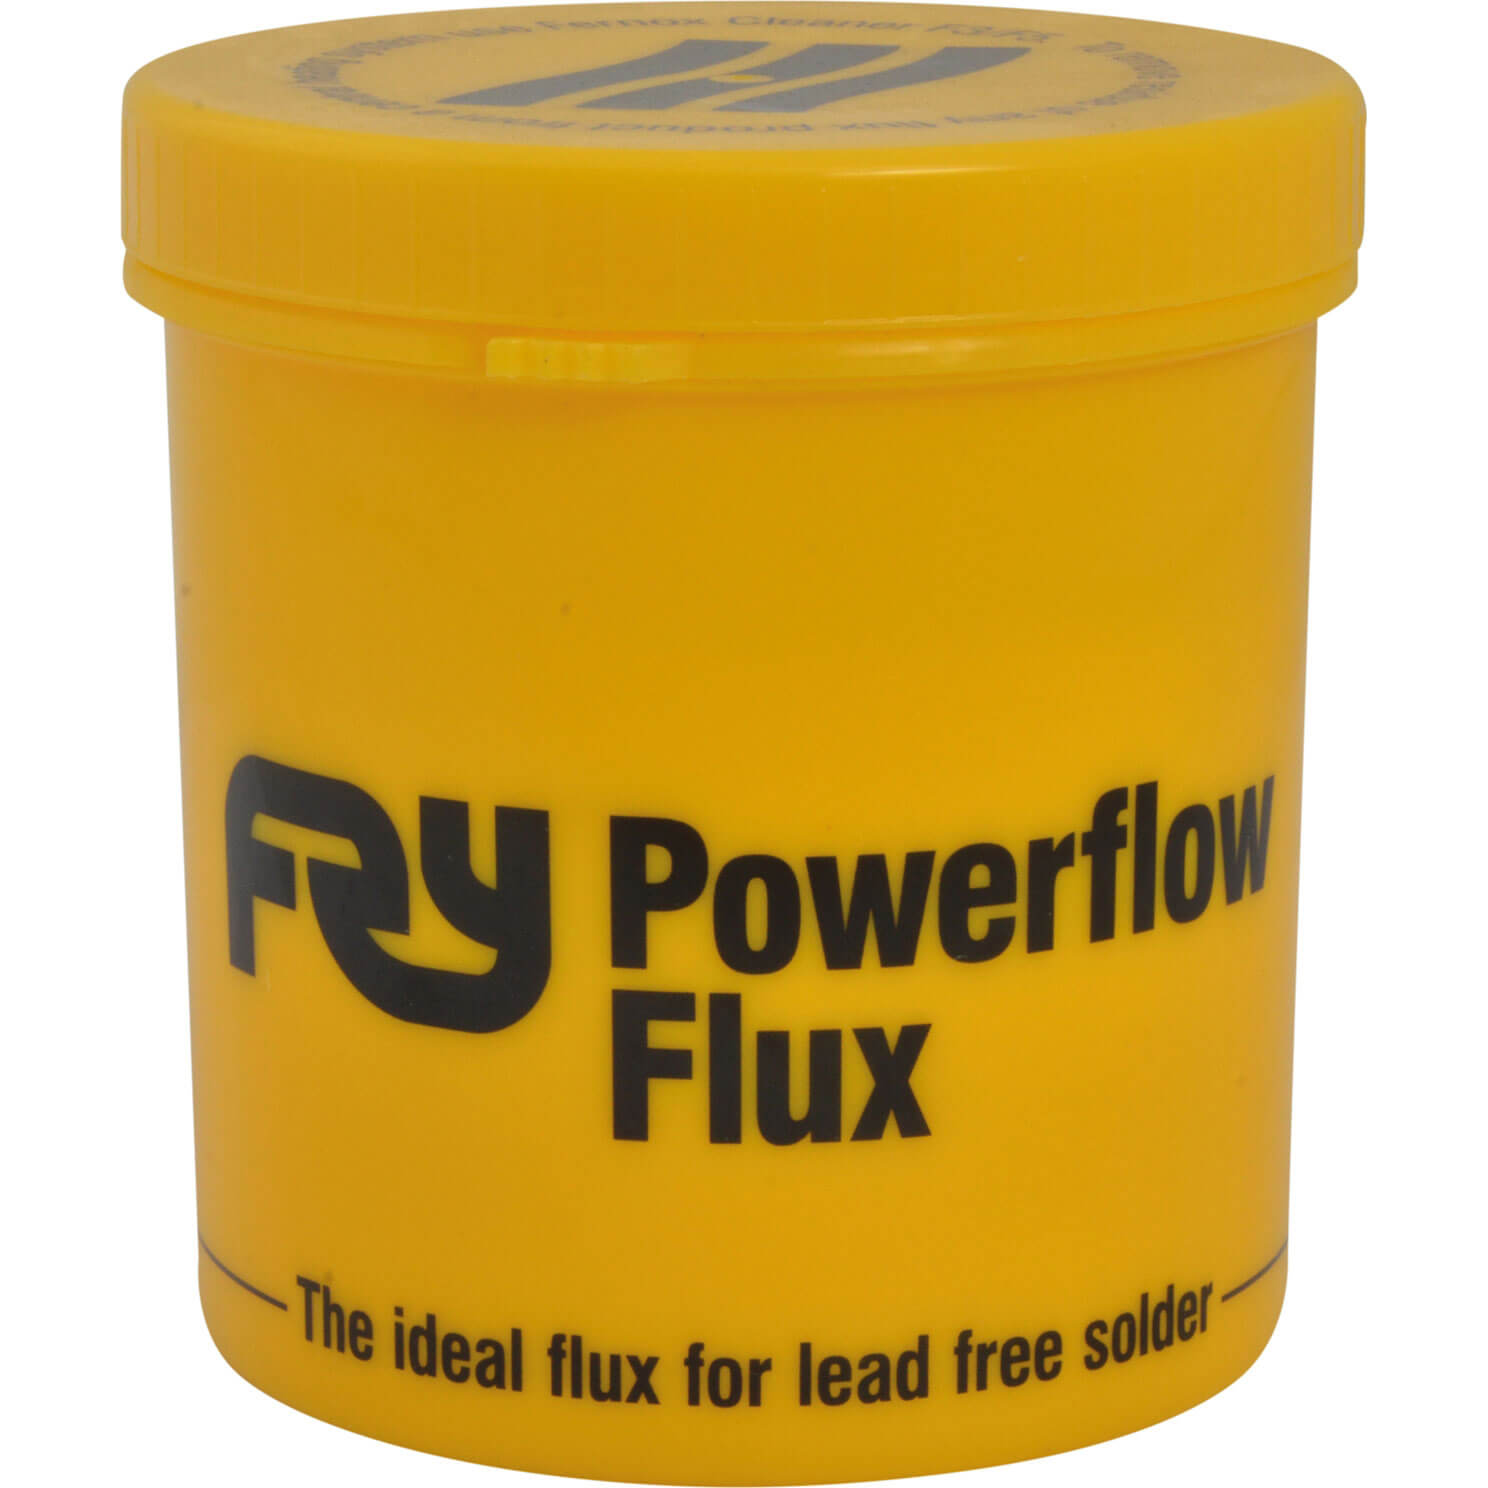 Photo of Frys Powerflow Flux 350g